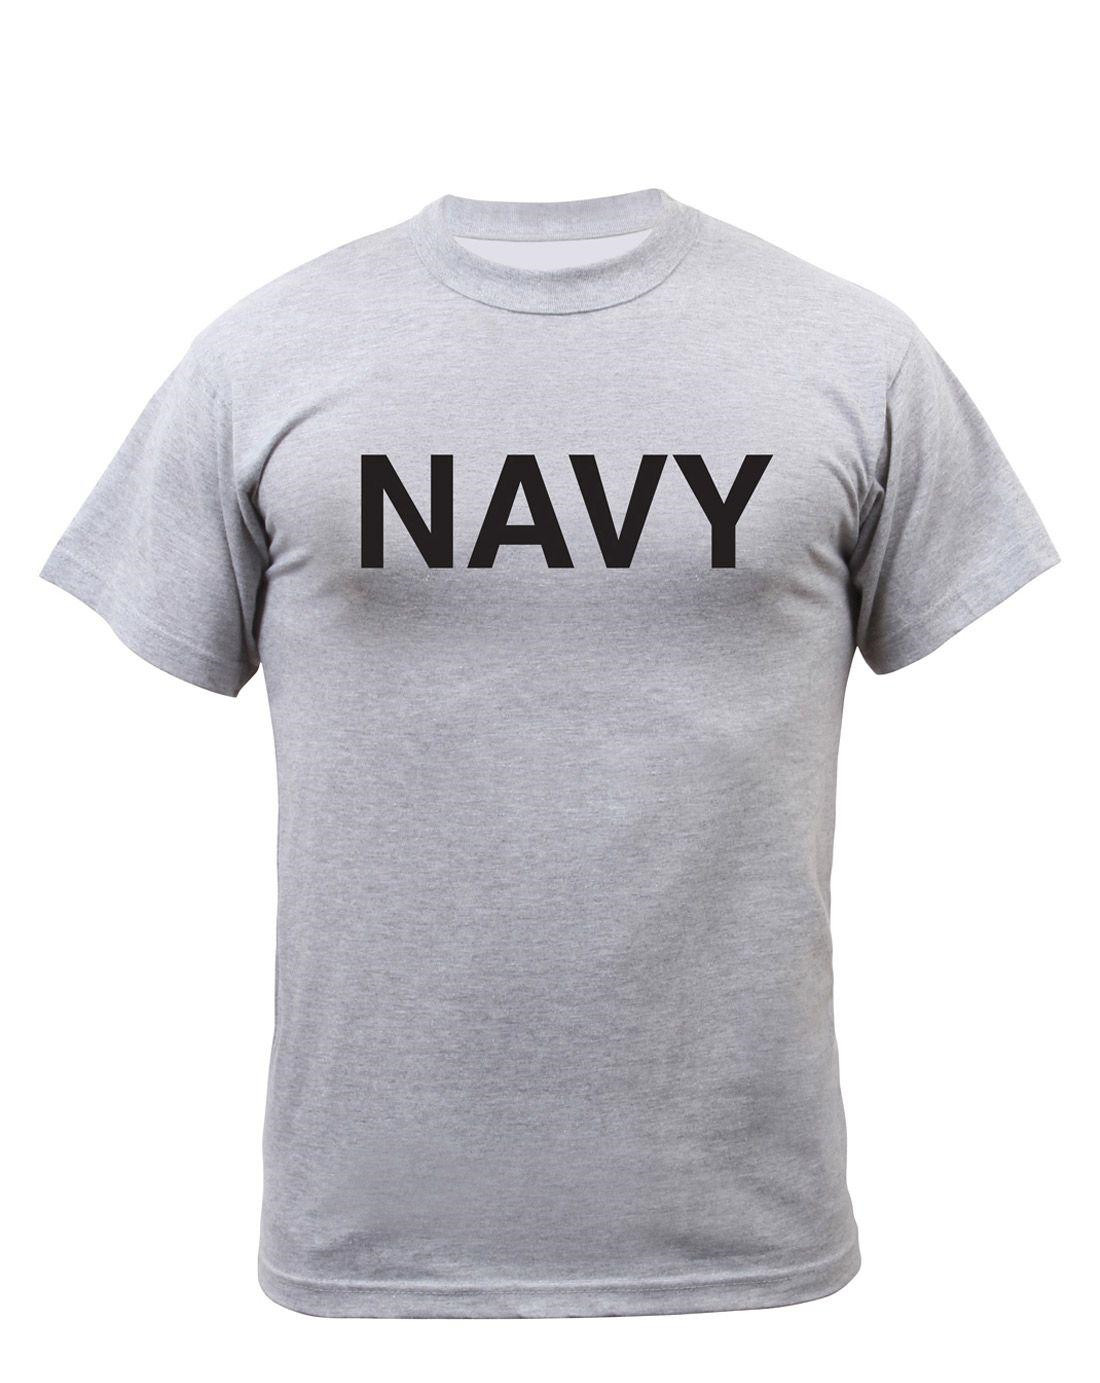 Rothco Physical Training T-shirt - 'ARMY' (Grå m. NAVY, XL)